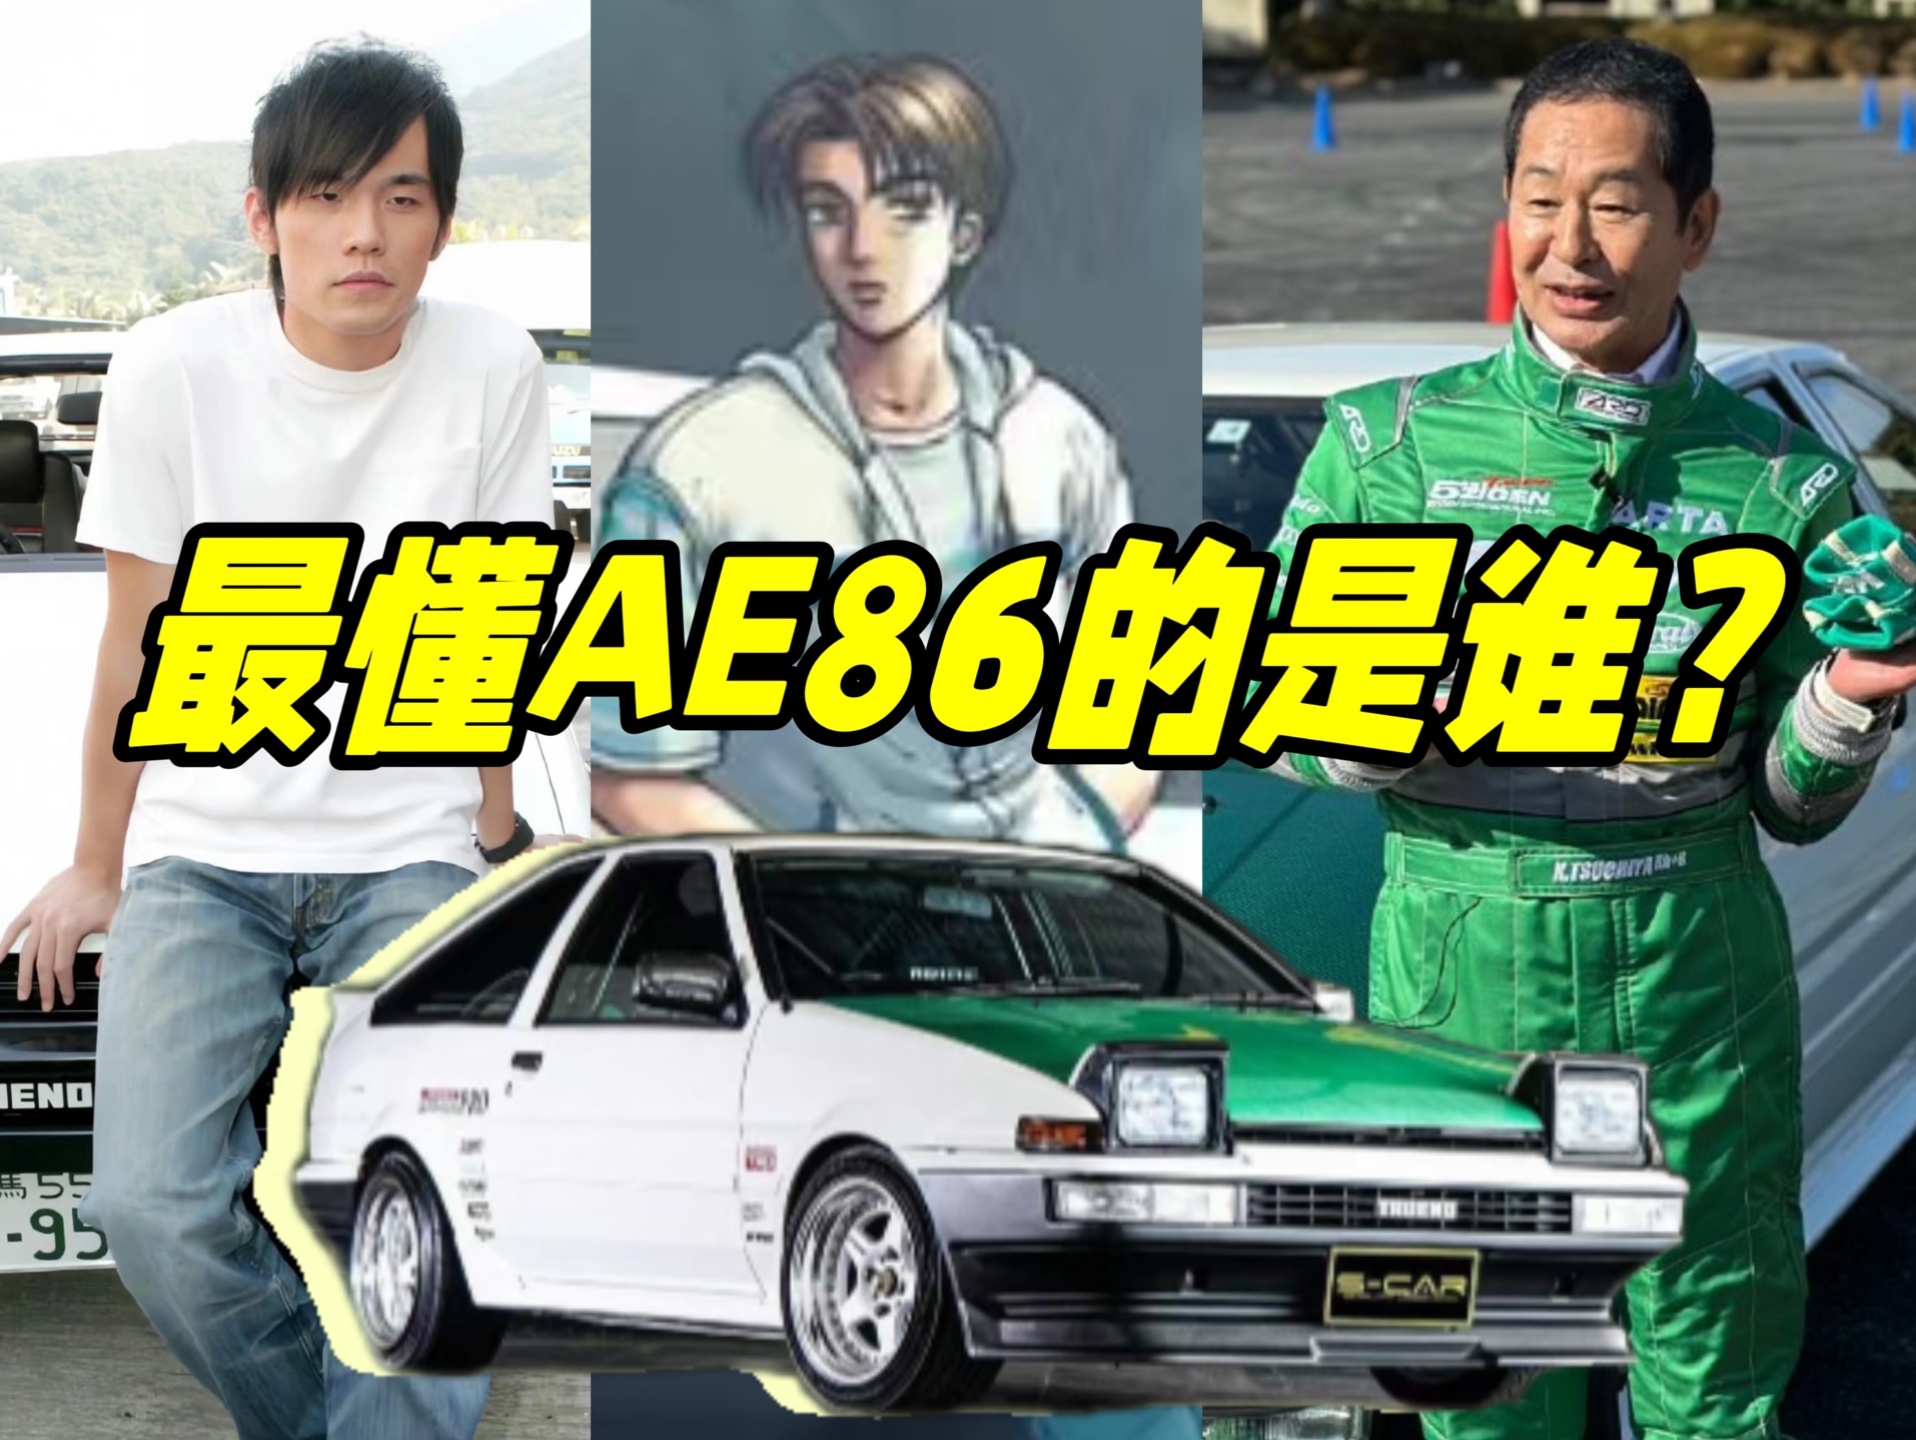 【老师好】头文字D的主角藤原拓海vs土屋圭市，谁能驾驭AE86？